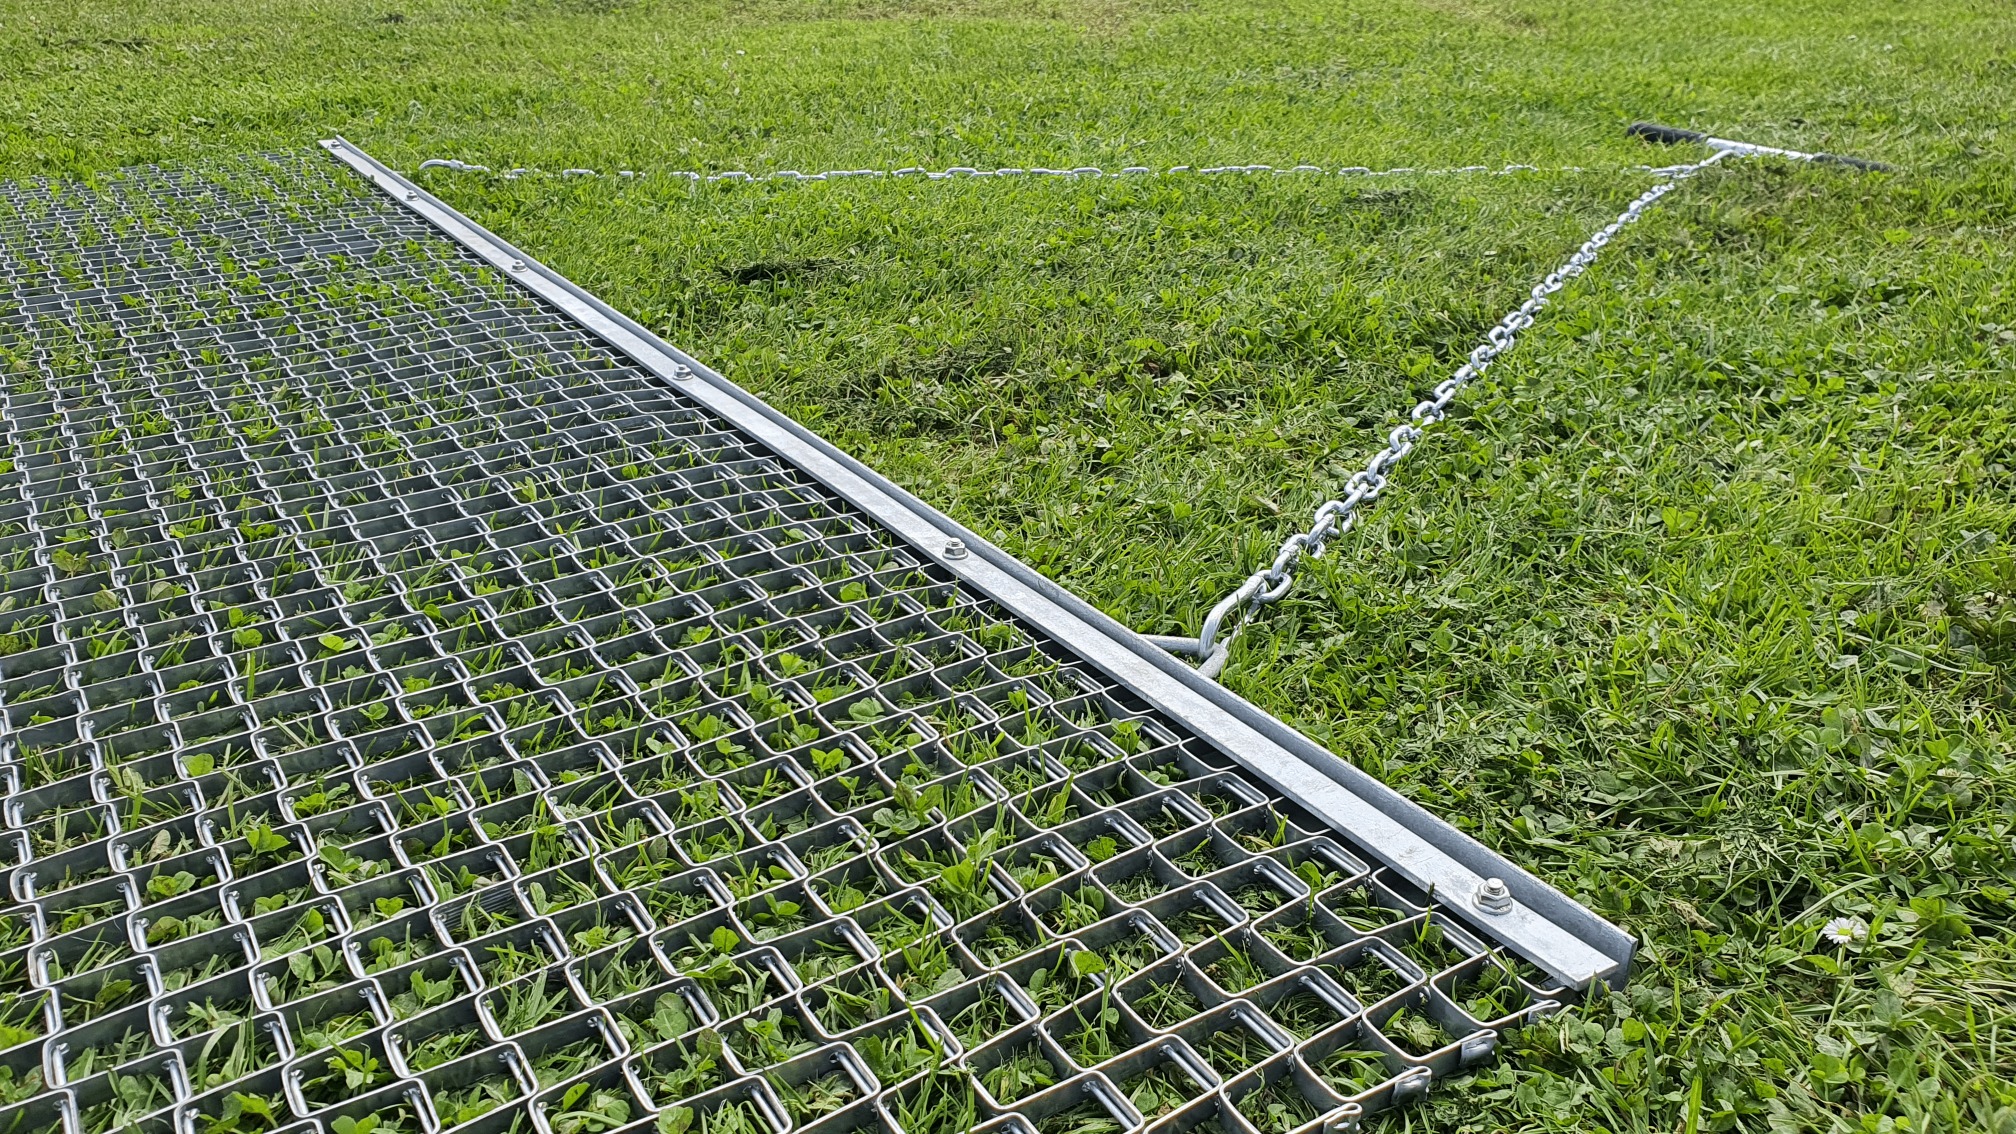  Verzinkte Stahl-Nivelliermatte zum Ebnen von Rasen, Schotter, Lehm und Sand (180x90cm)